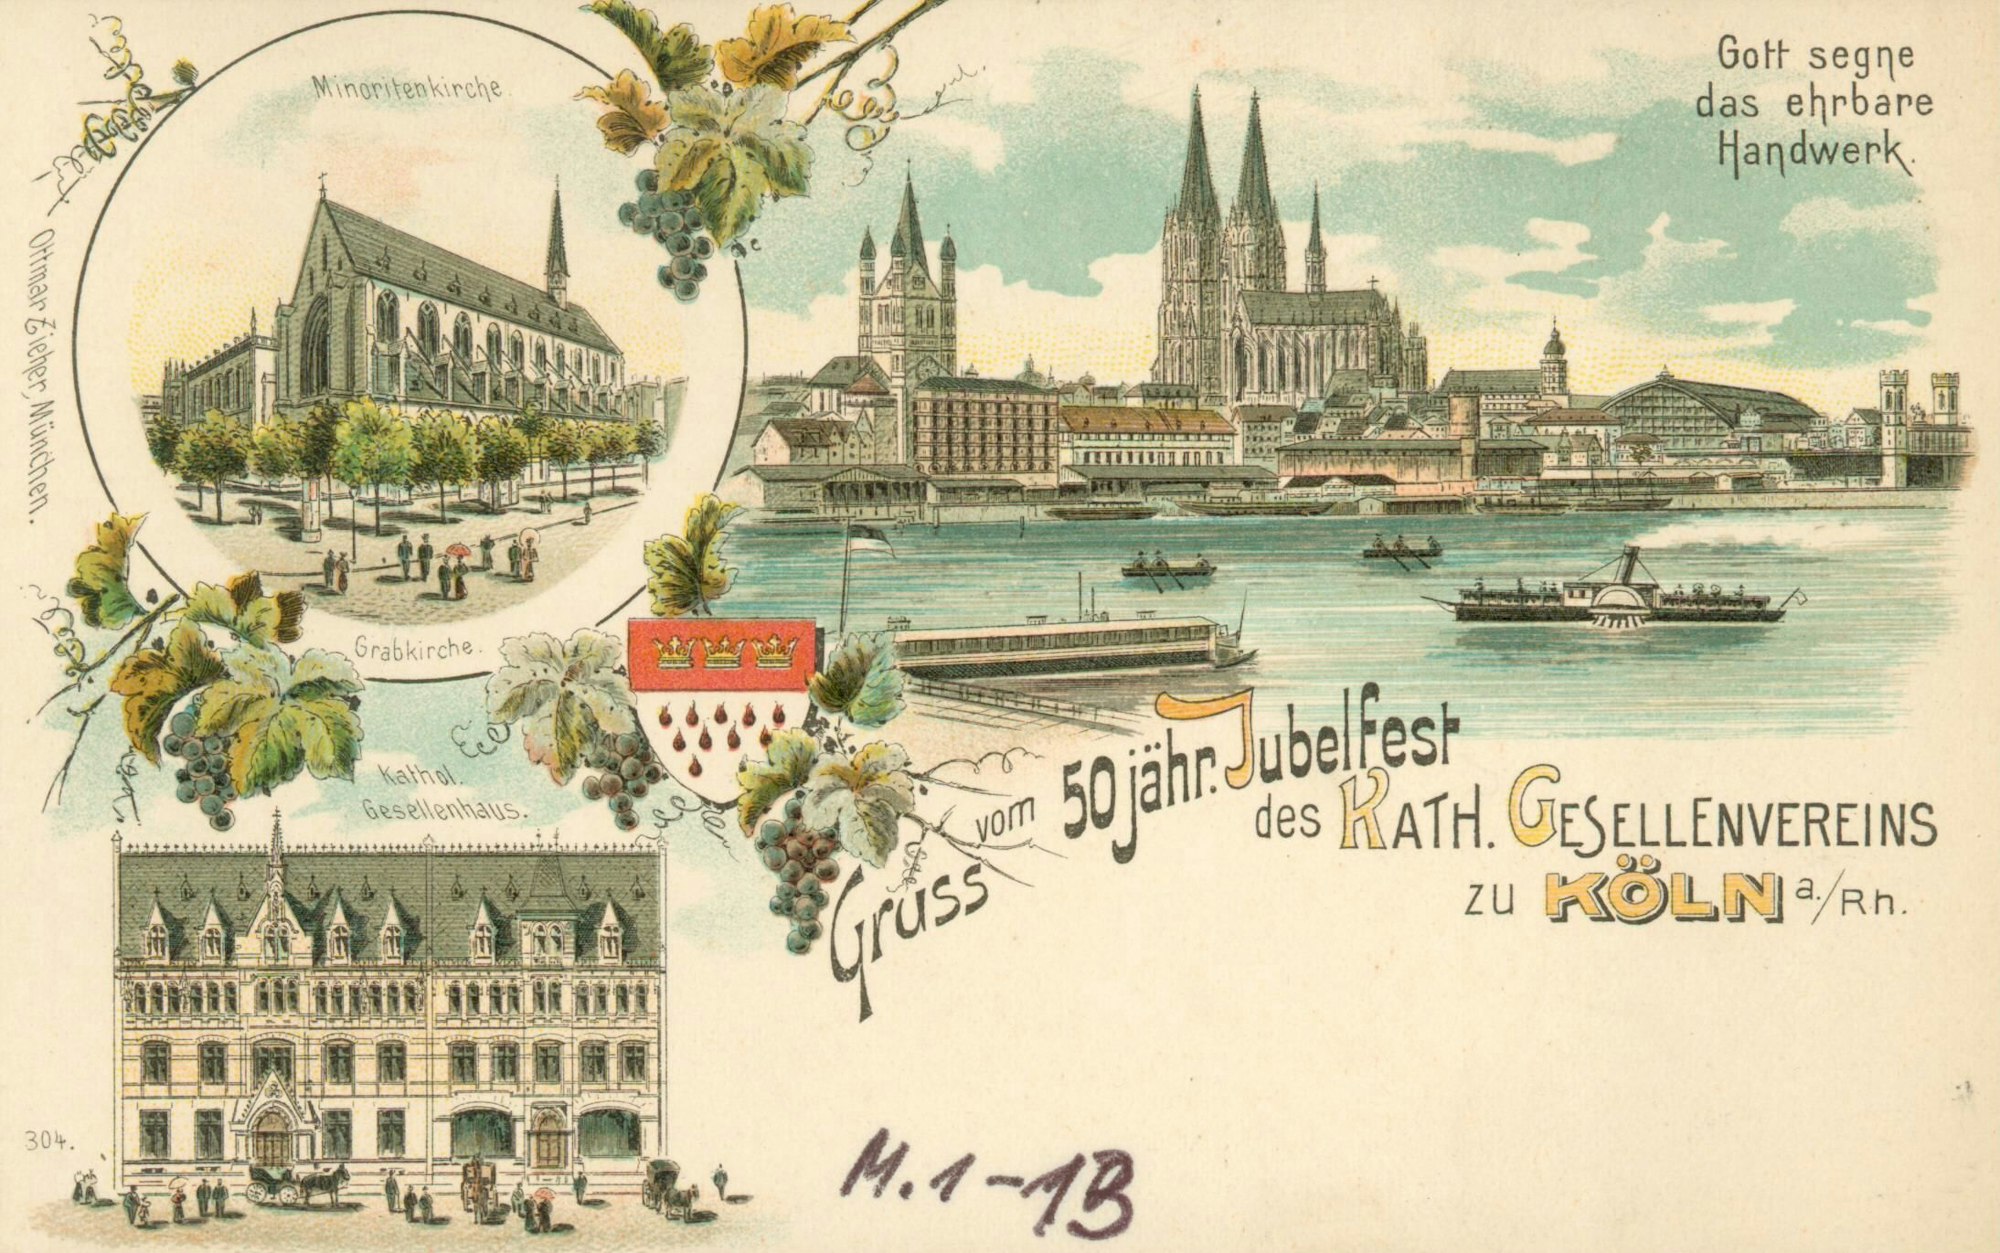 Ansichtskarte zum 50jährigen Jubiläum des Katholischen Gesellenvereins zu Köln, 1899